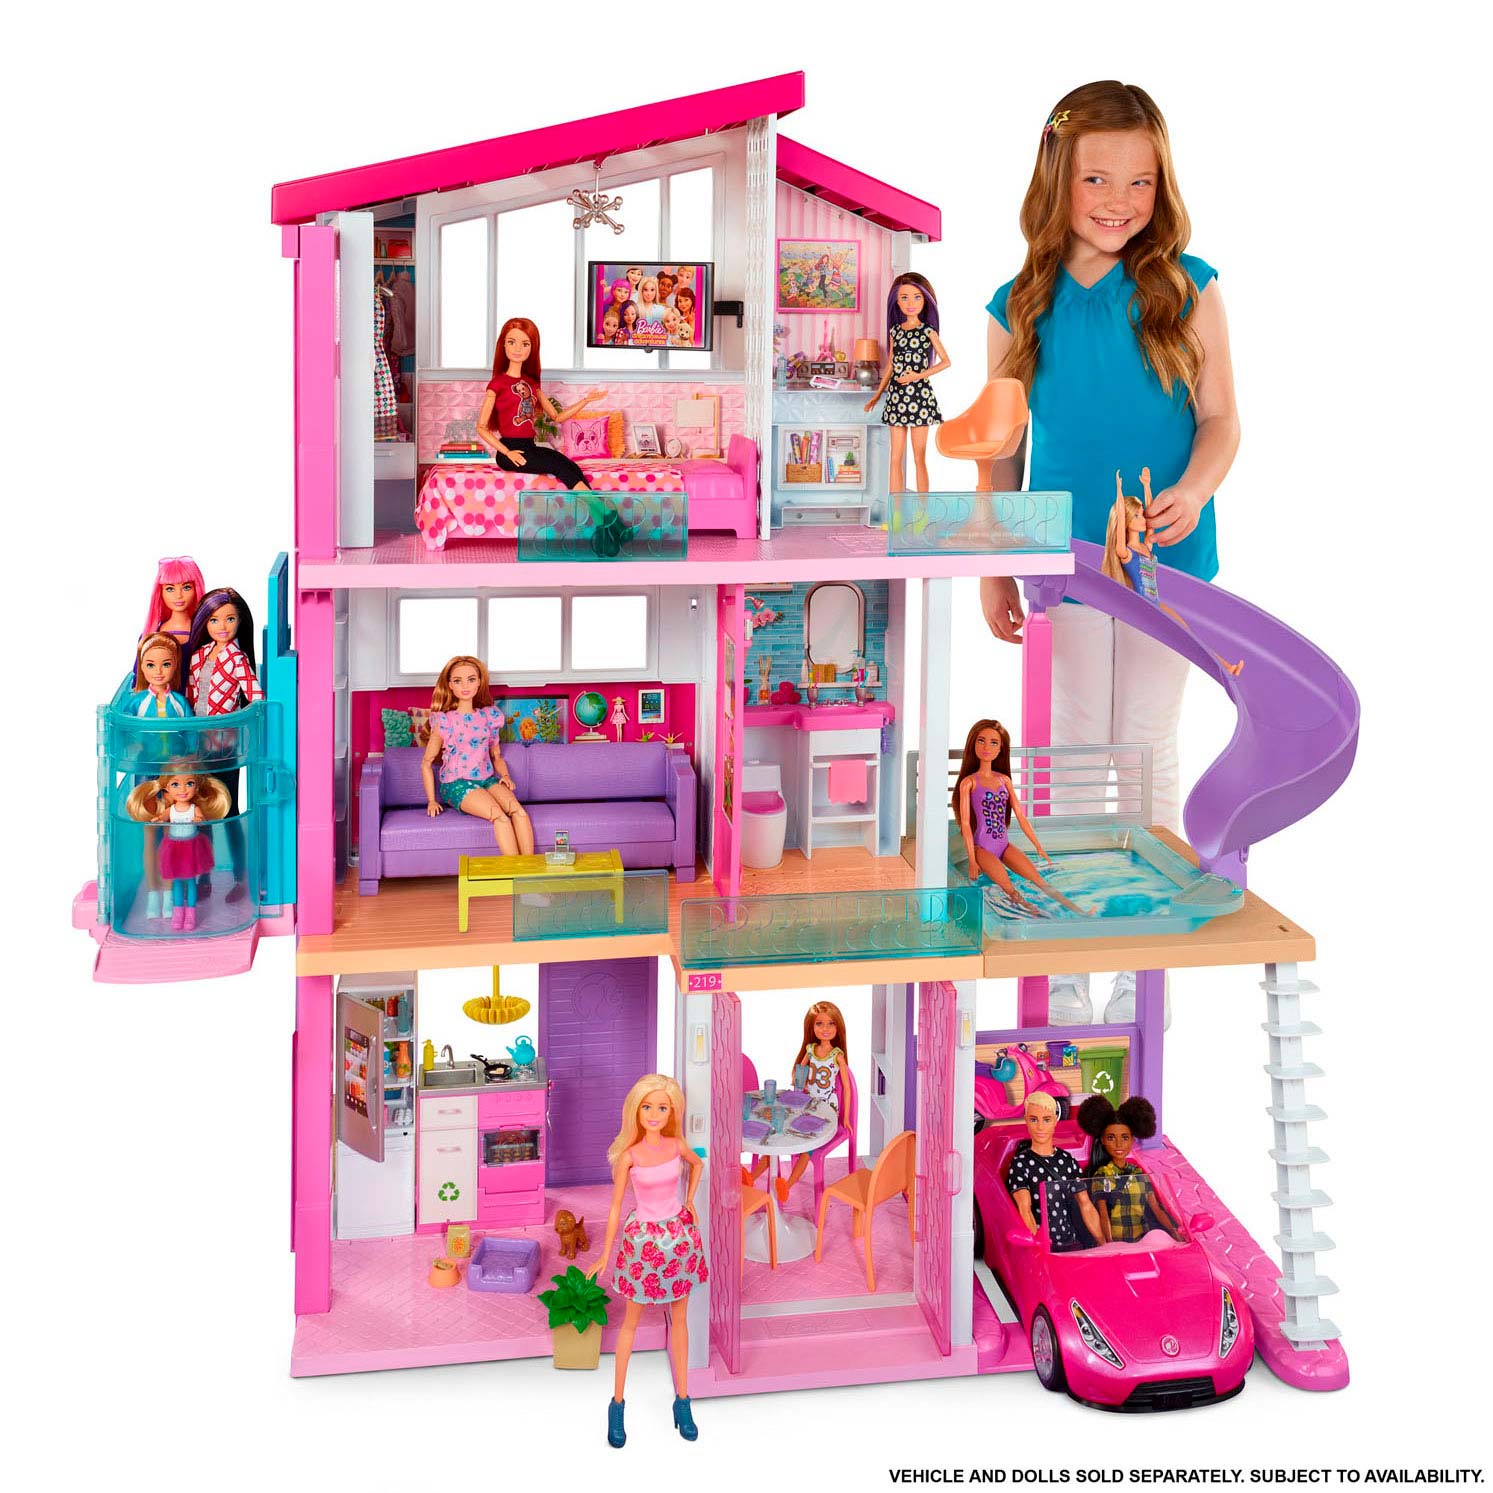 kern Naar de waarheid Luidruchtig Barbie Droomhuis met Lift | Thimble Toys